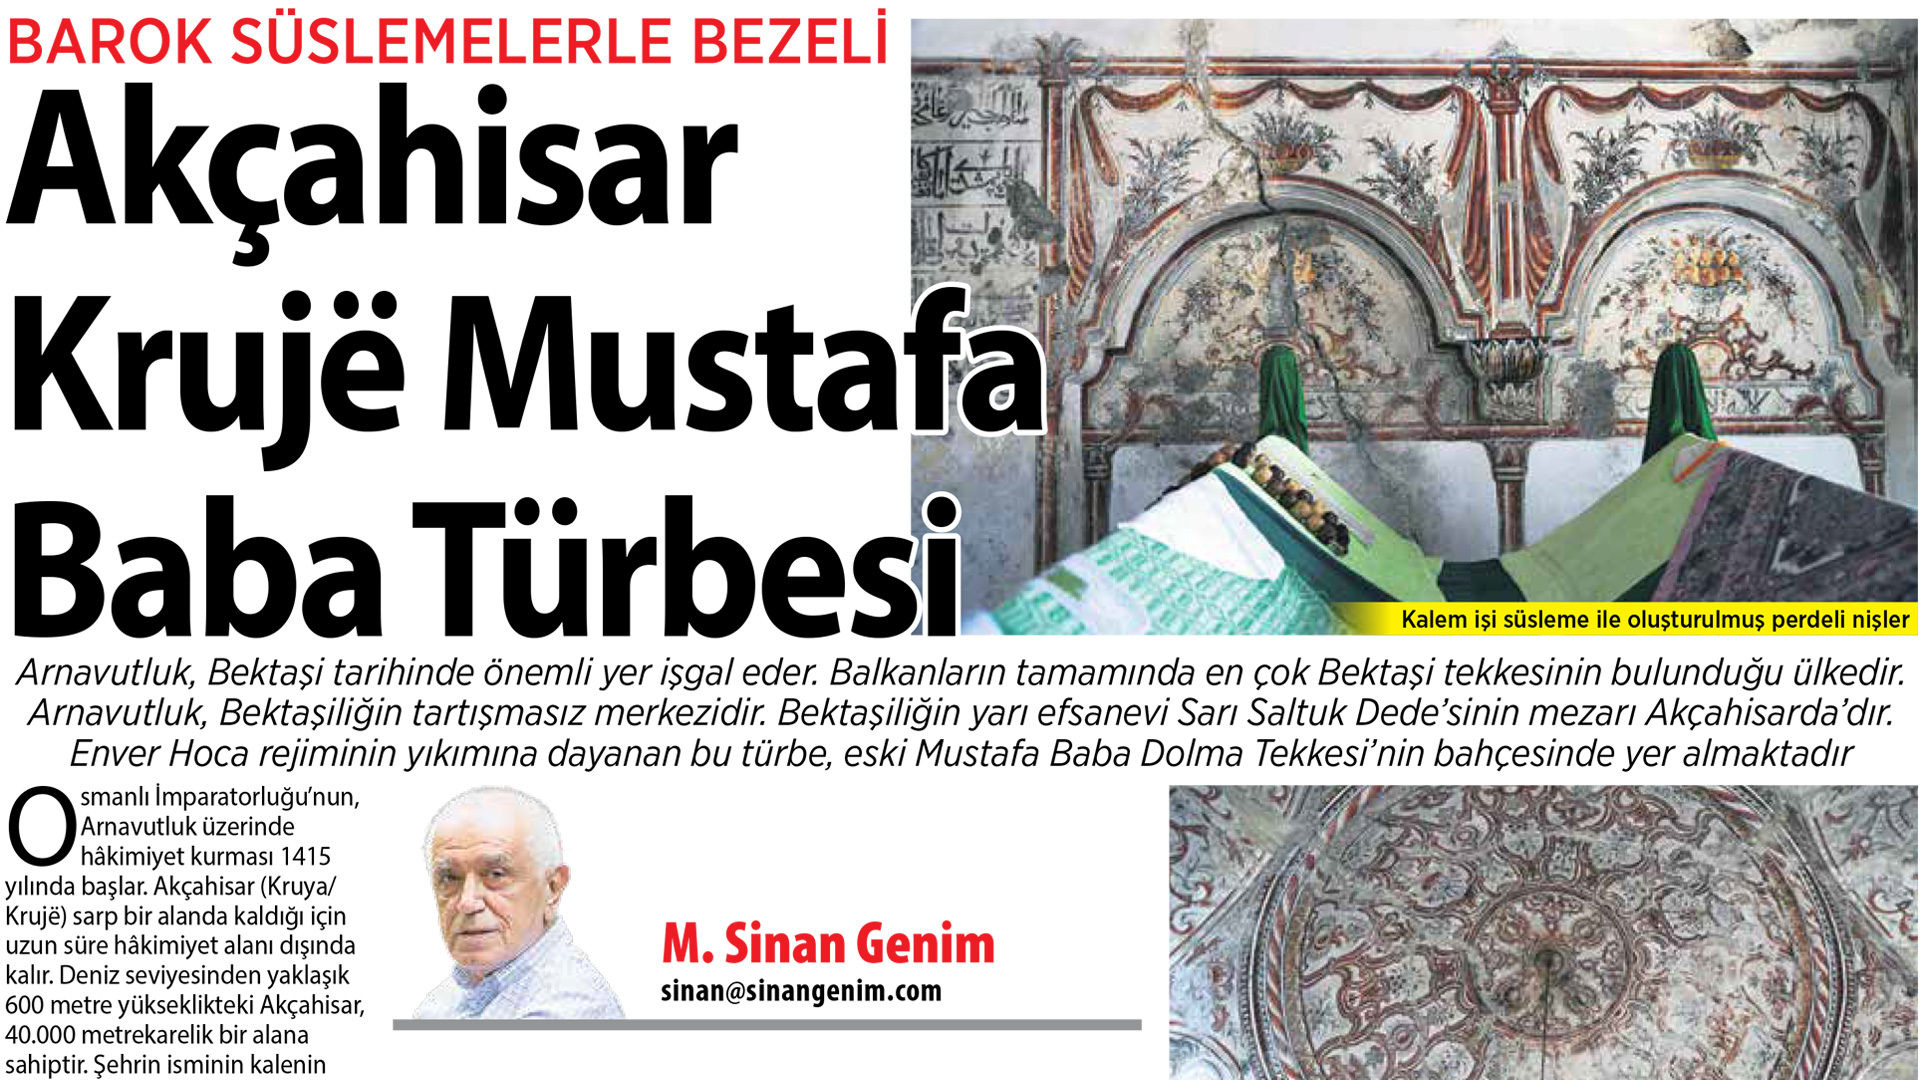 Akçahisar Krujë Mustafa Baba Türbesi...